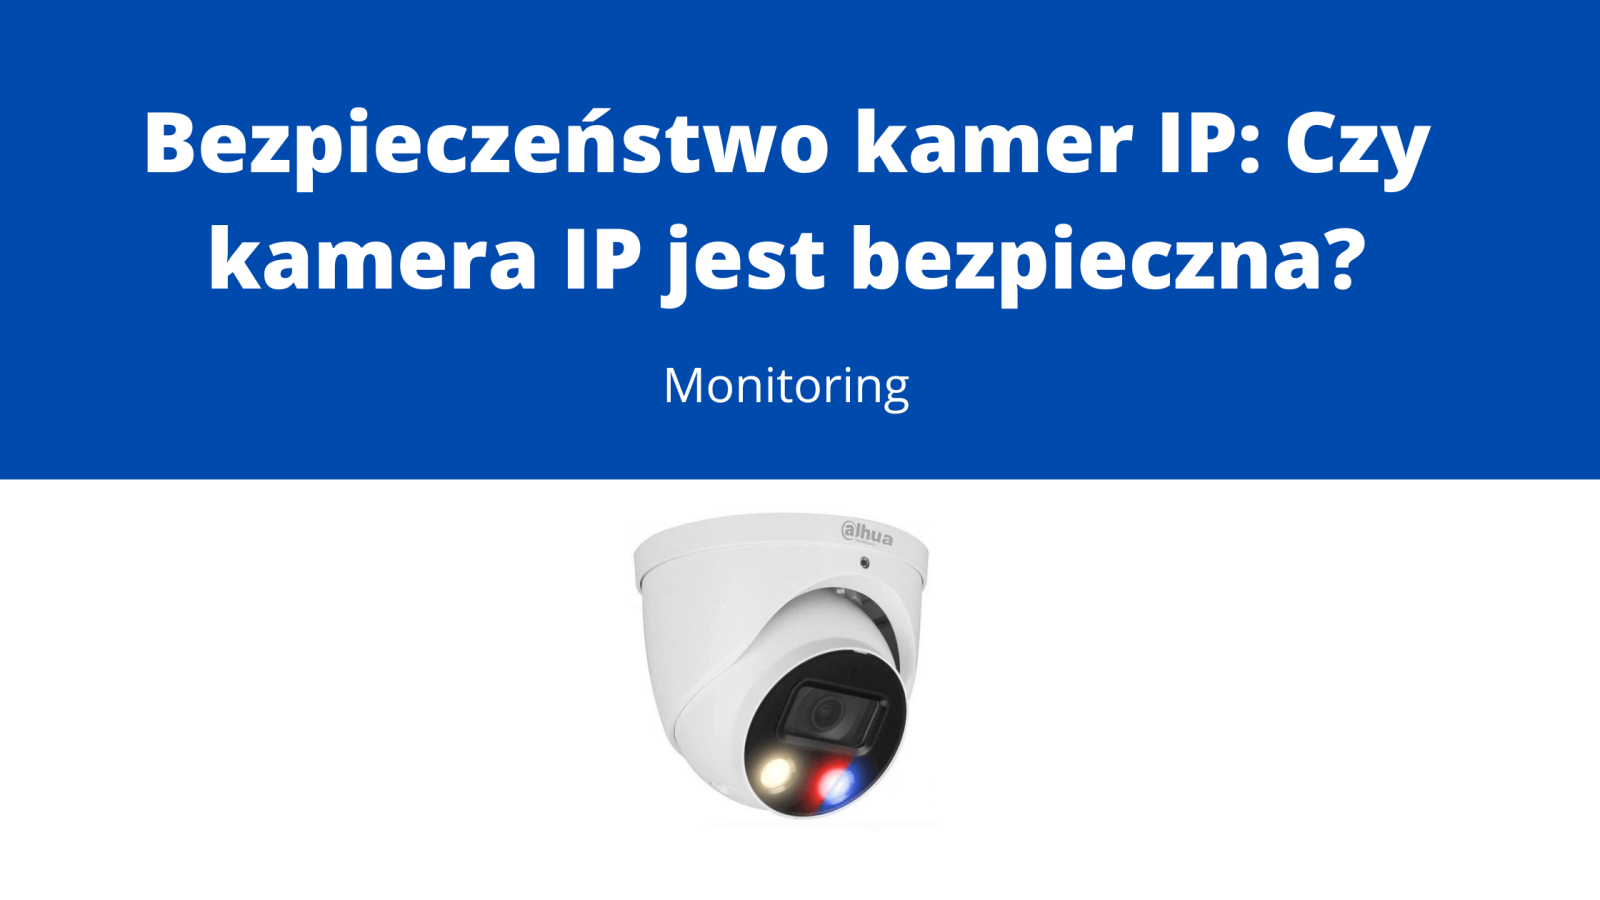 Bezpieczeństwo kamer IP Czy kamera IP jest bezpieczna